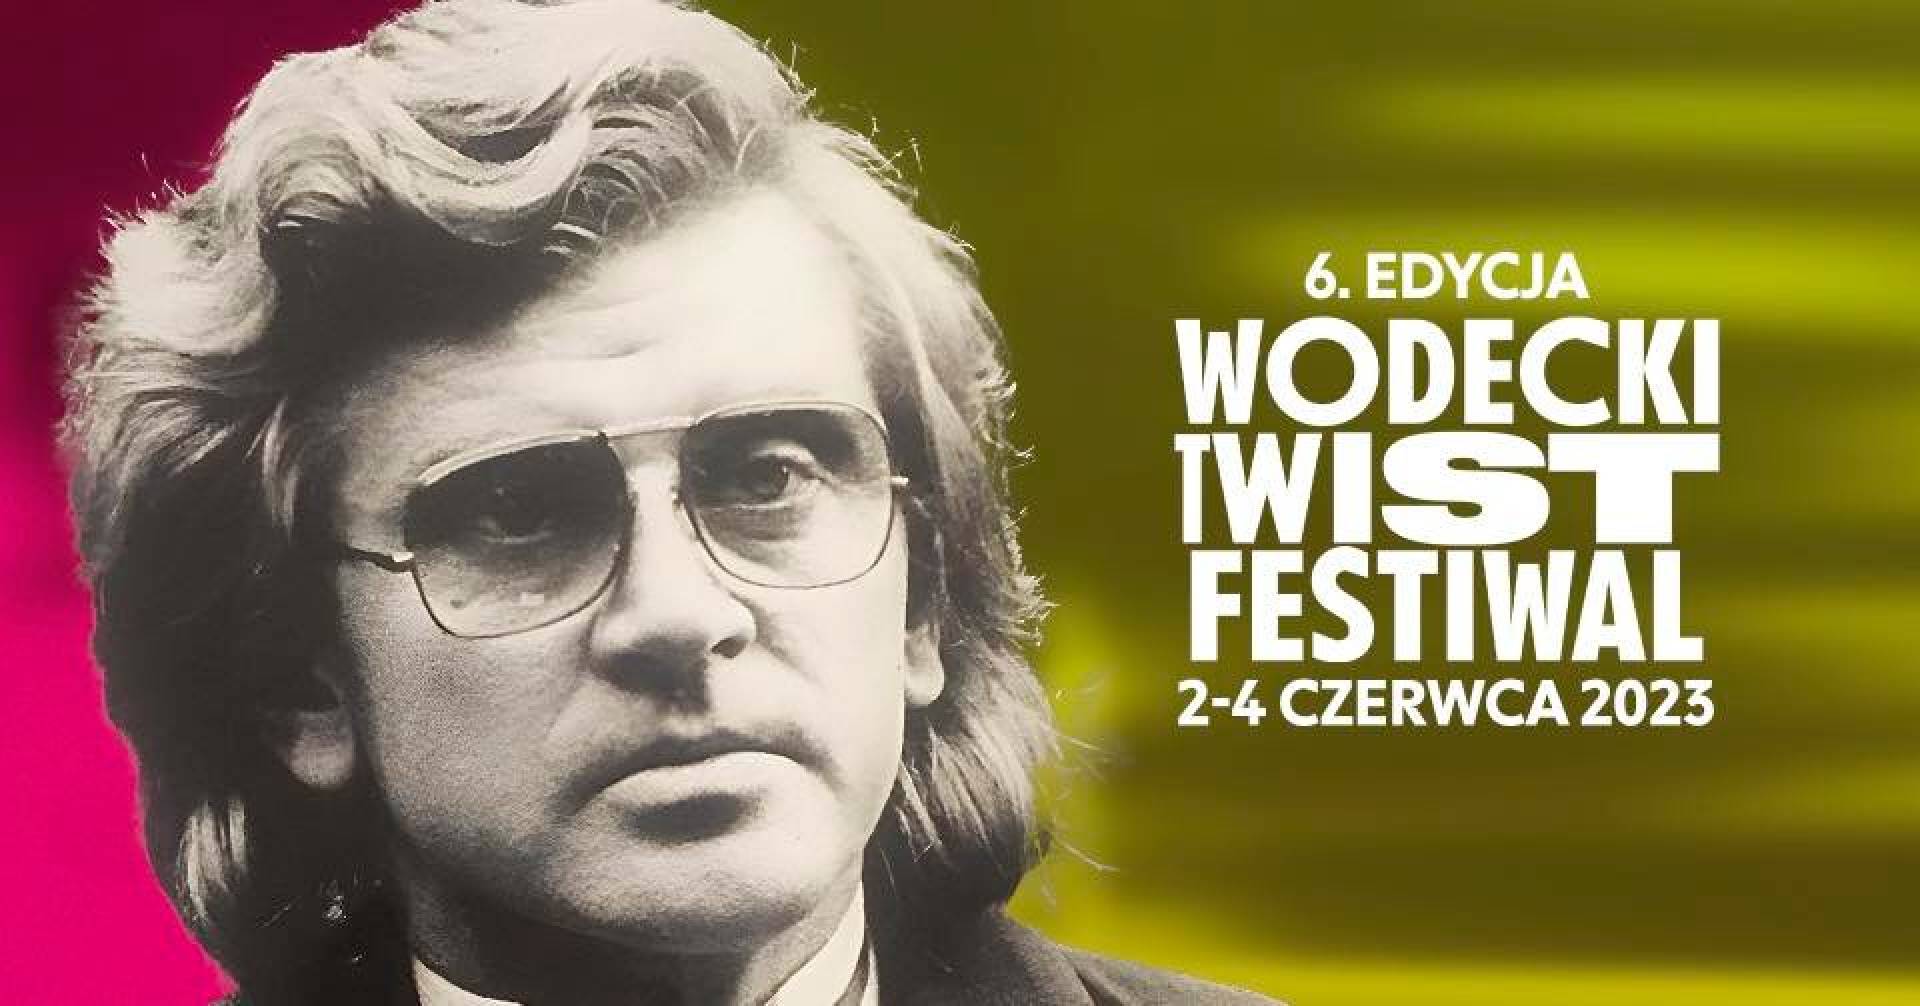 Festiwal WODECKI TWIST